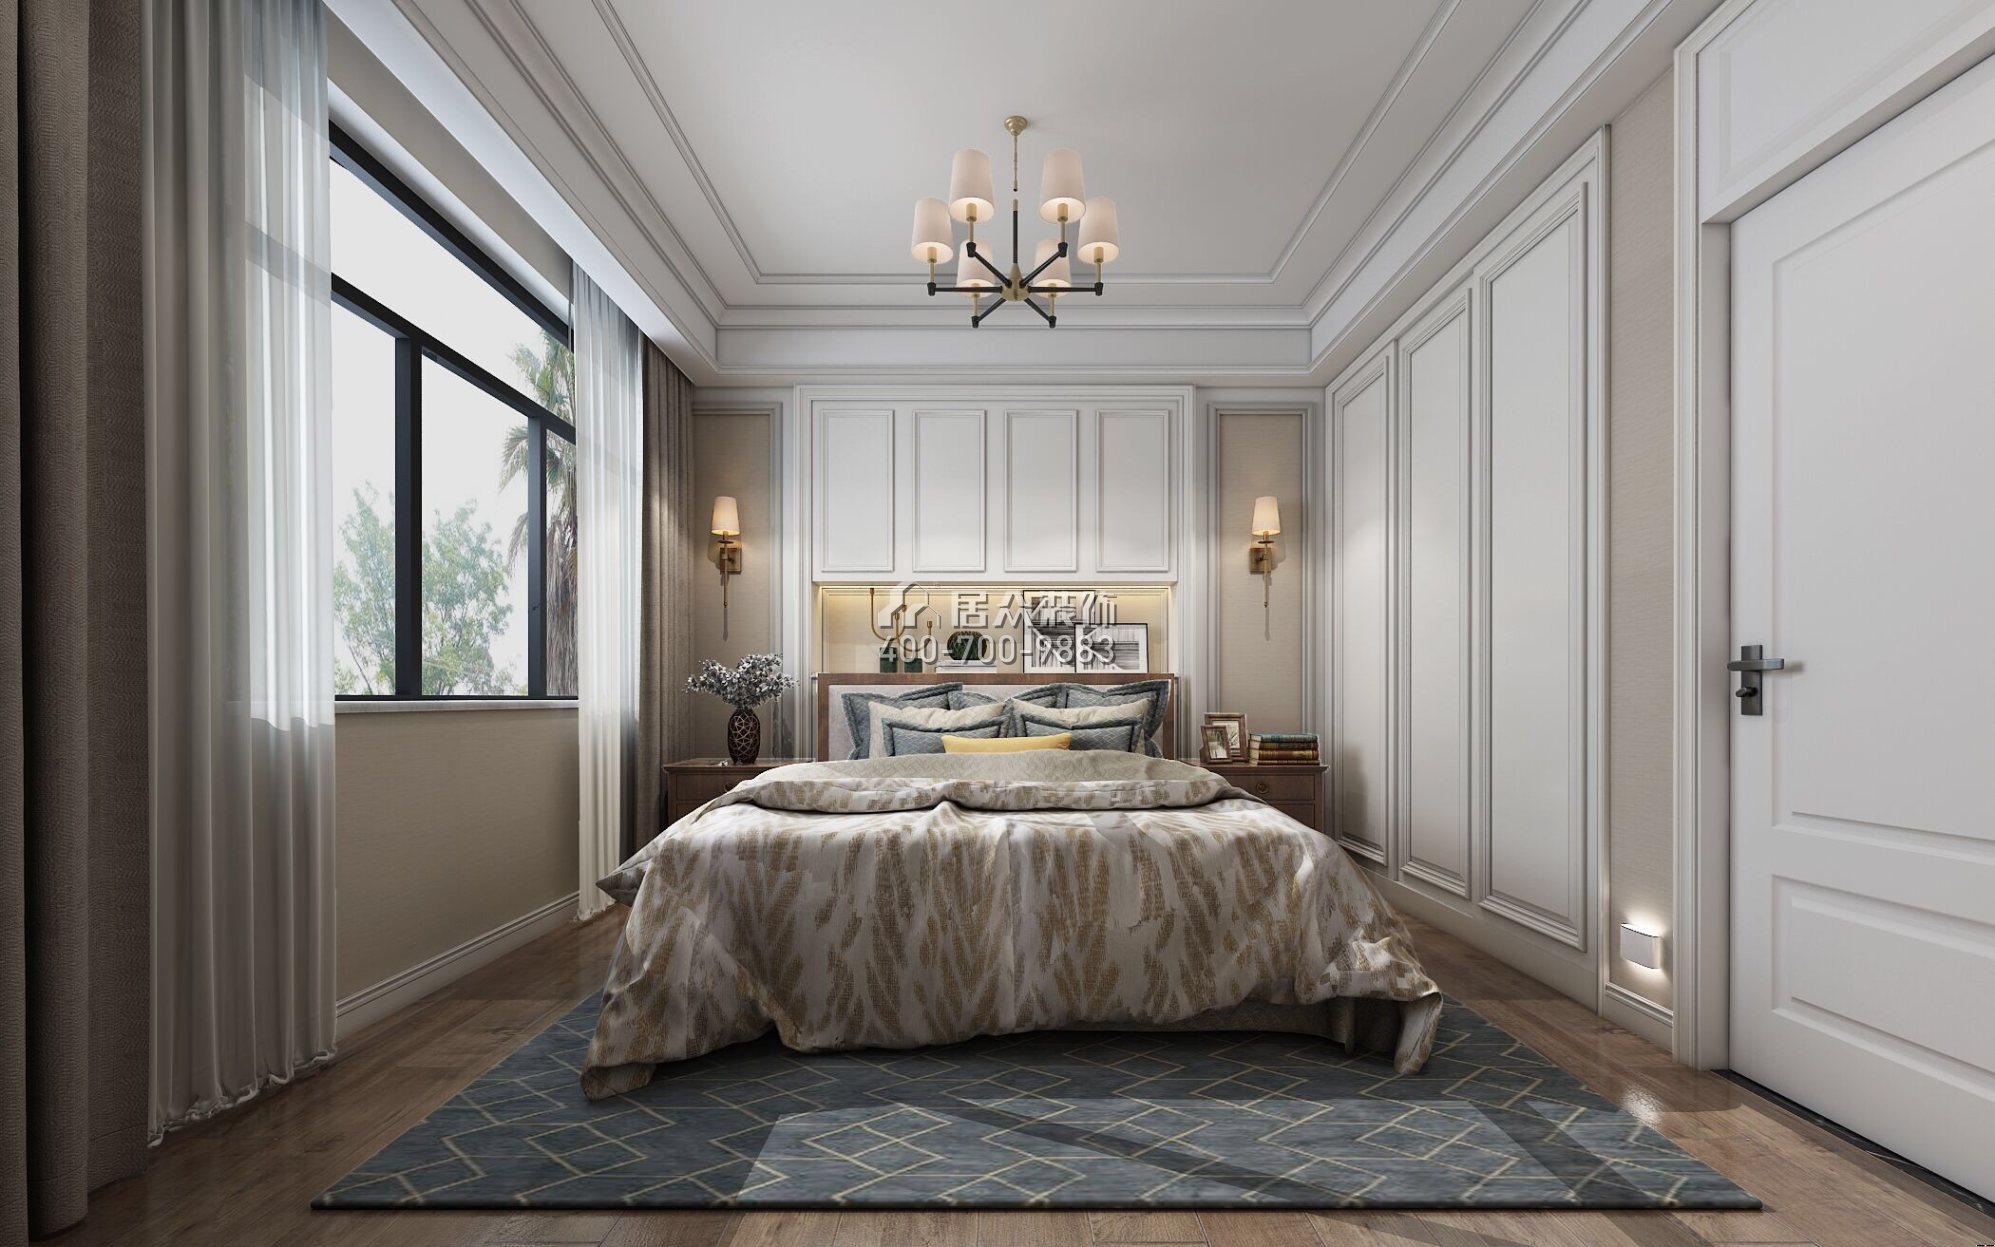 保利中央公園450平方米美式風格別墅戶型臥室裝修效果圖